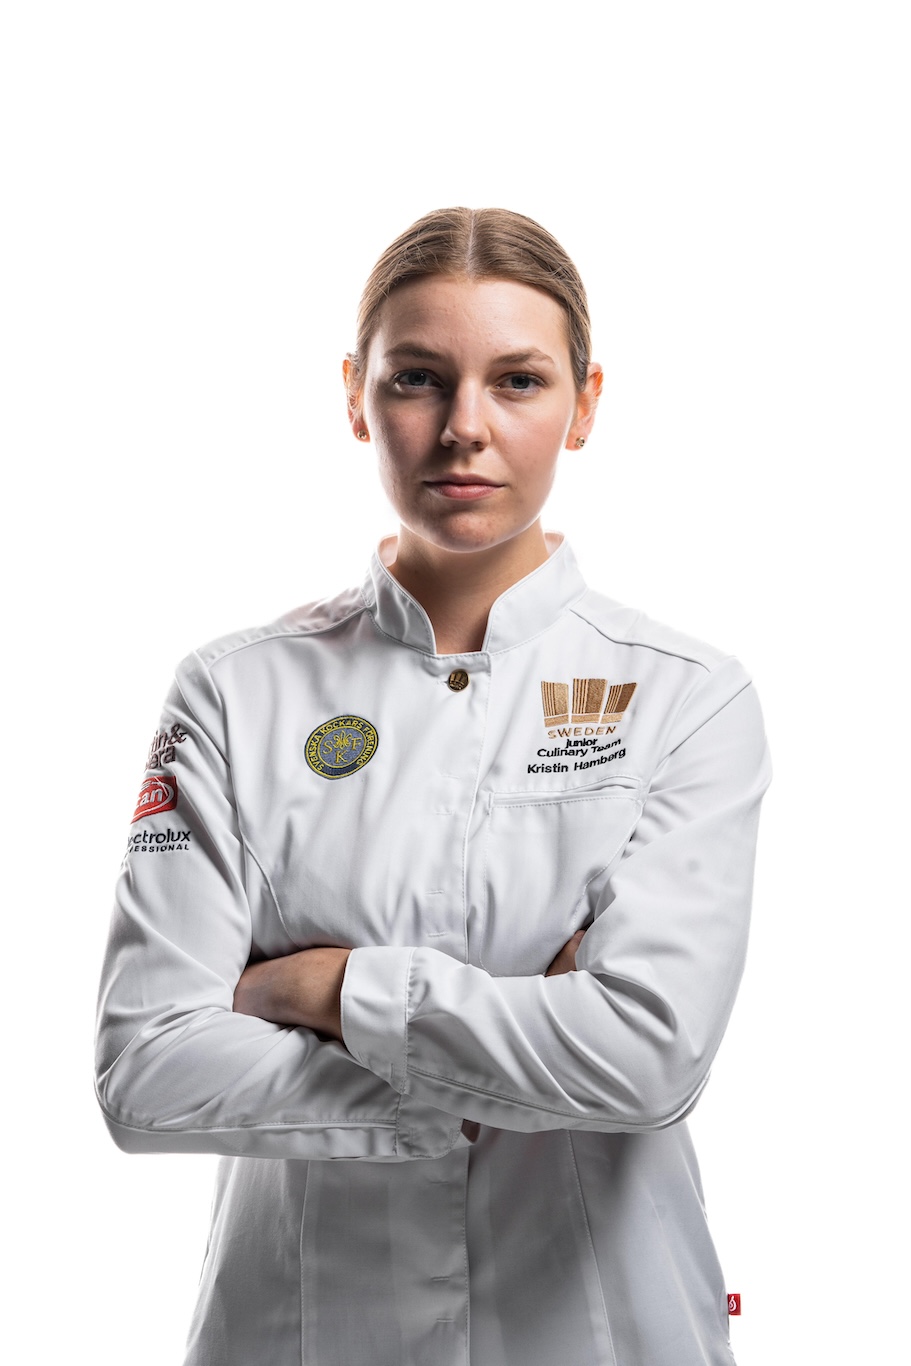 Kristin Hambergs reise fra amatørbaker til kulinarisk OL-gullvinner 16